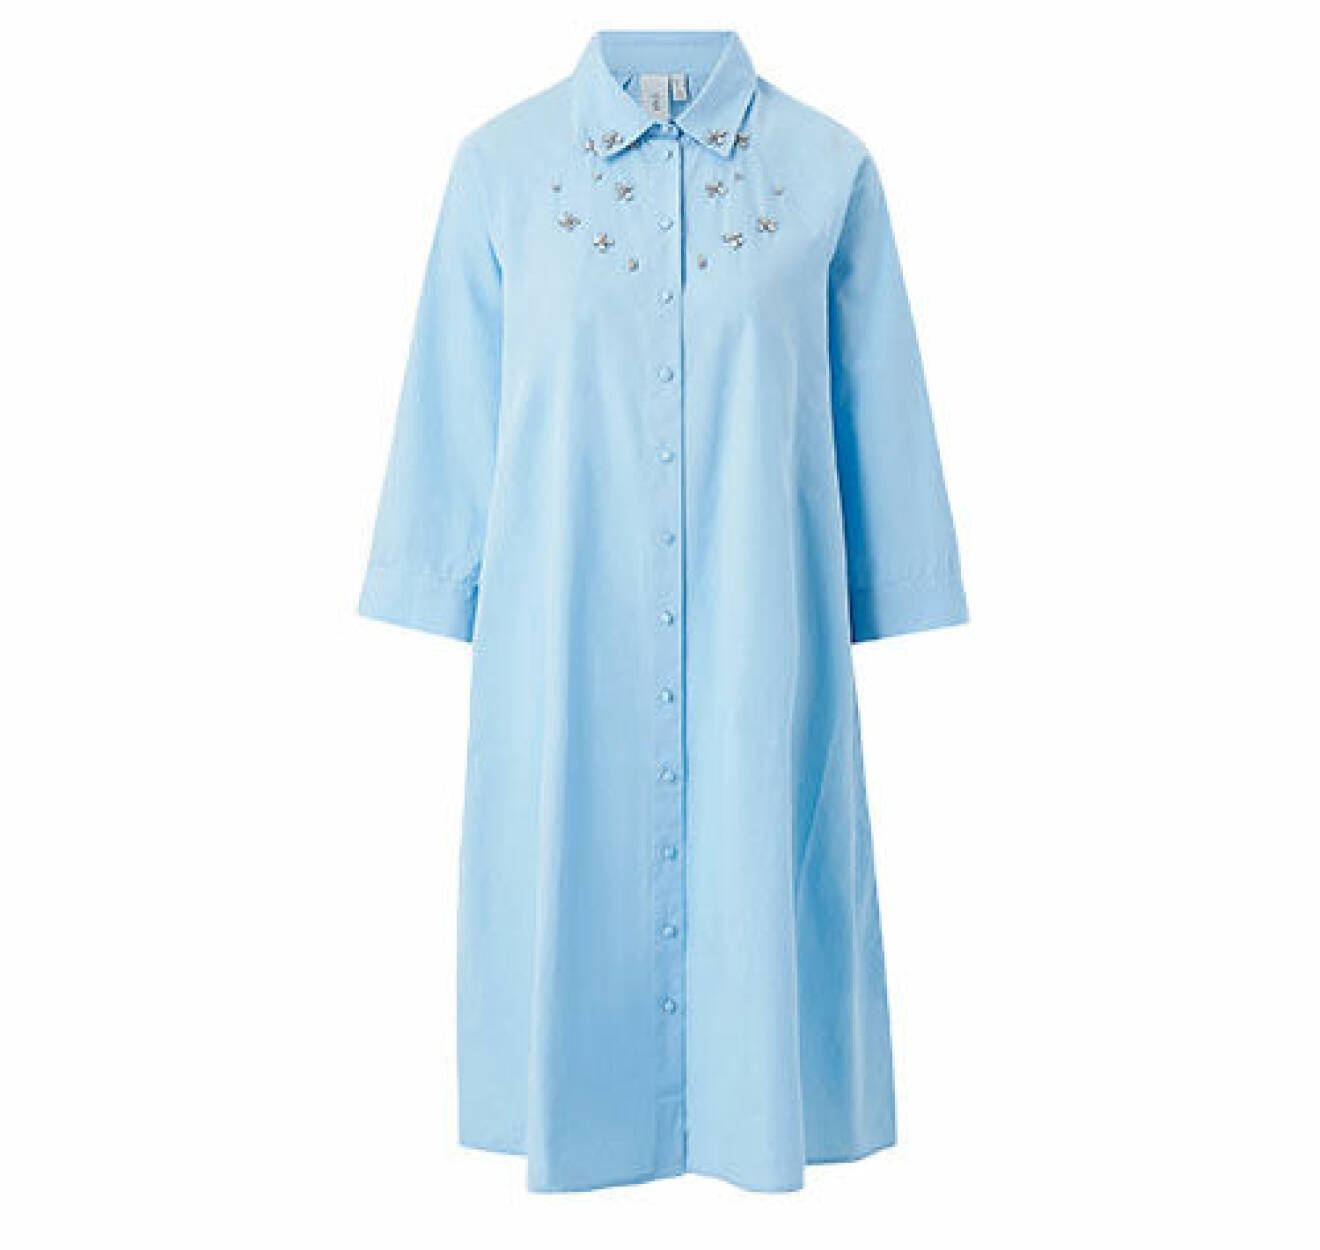 Ljusblå skjortklänning med knappar, krage och stenar från YAS